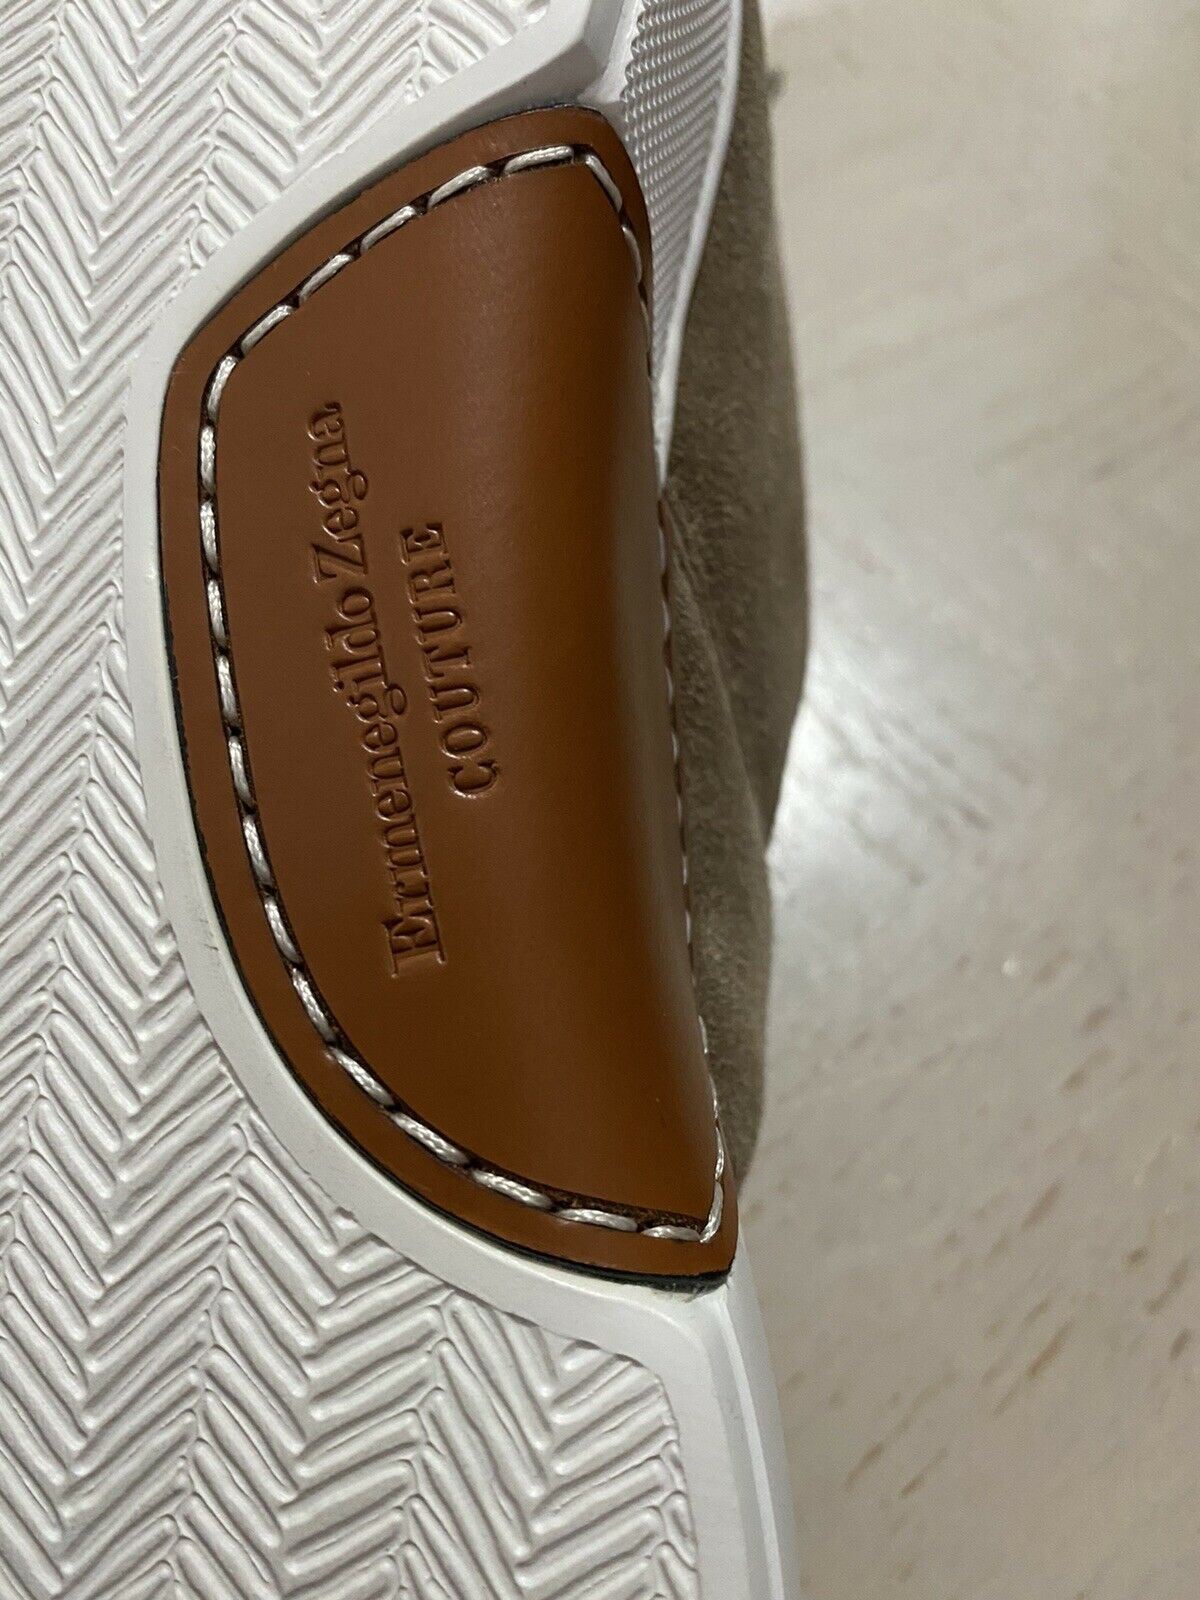 Новые замшевые/кожаные кроссовки Ermenegildo Zegna Couture за 850 долларов США LT Brown 10.5 US